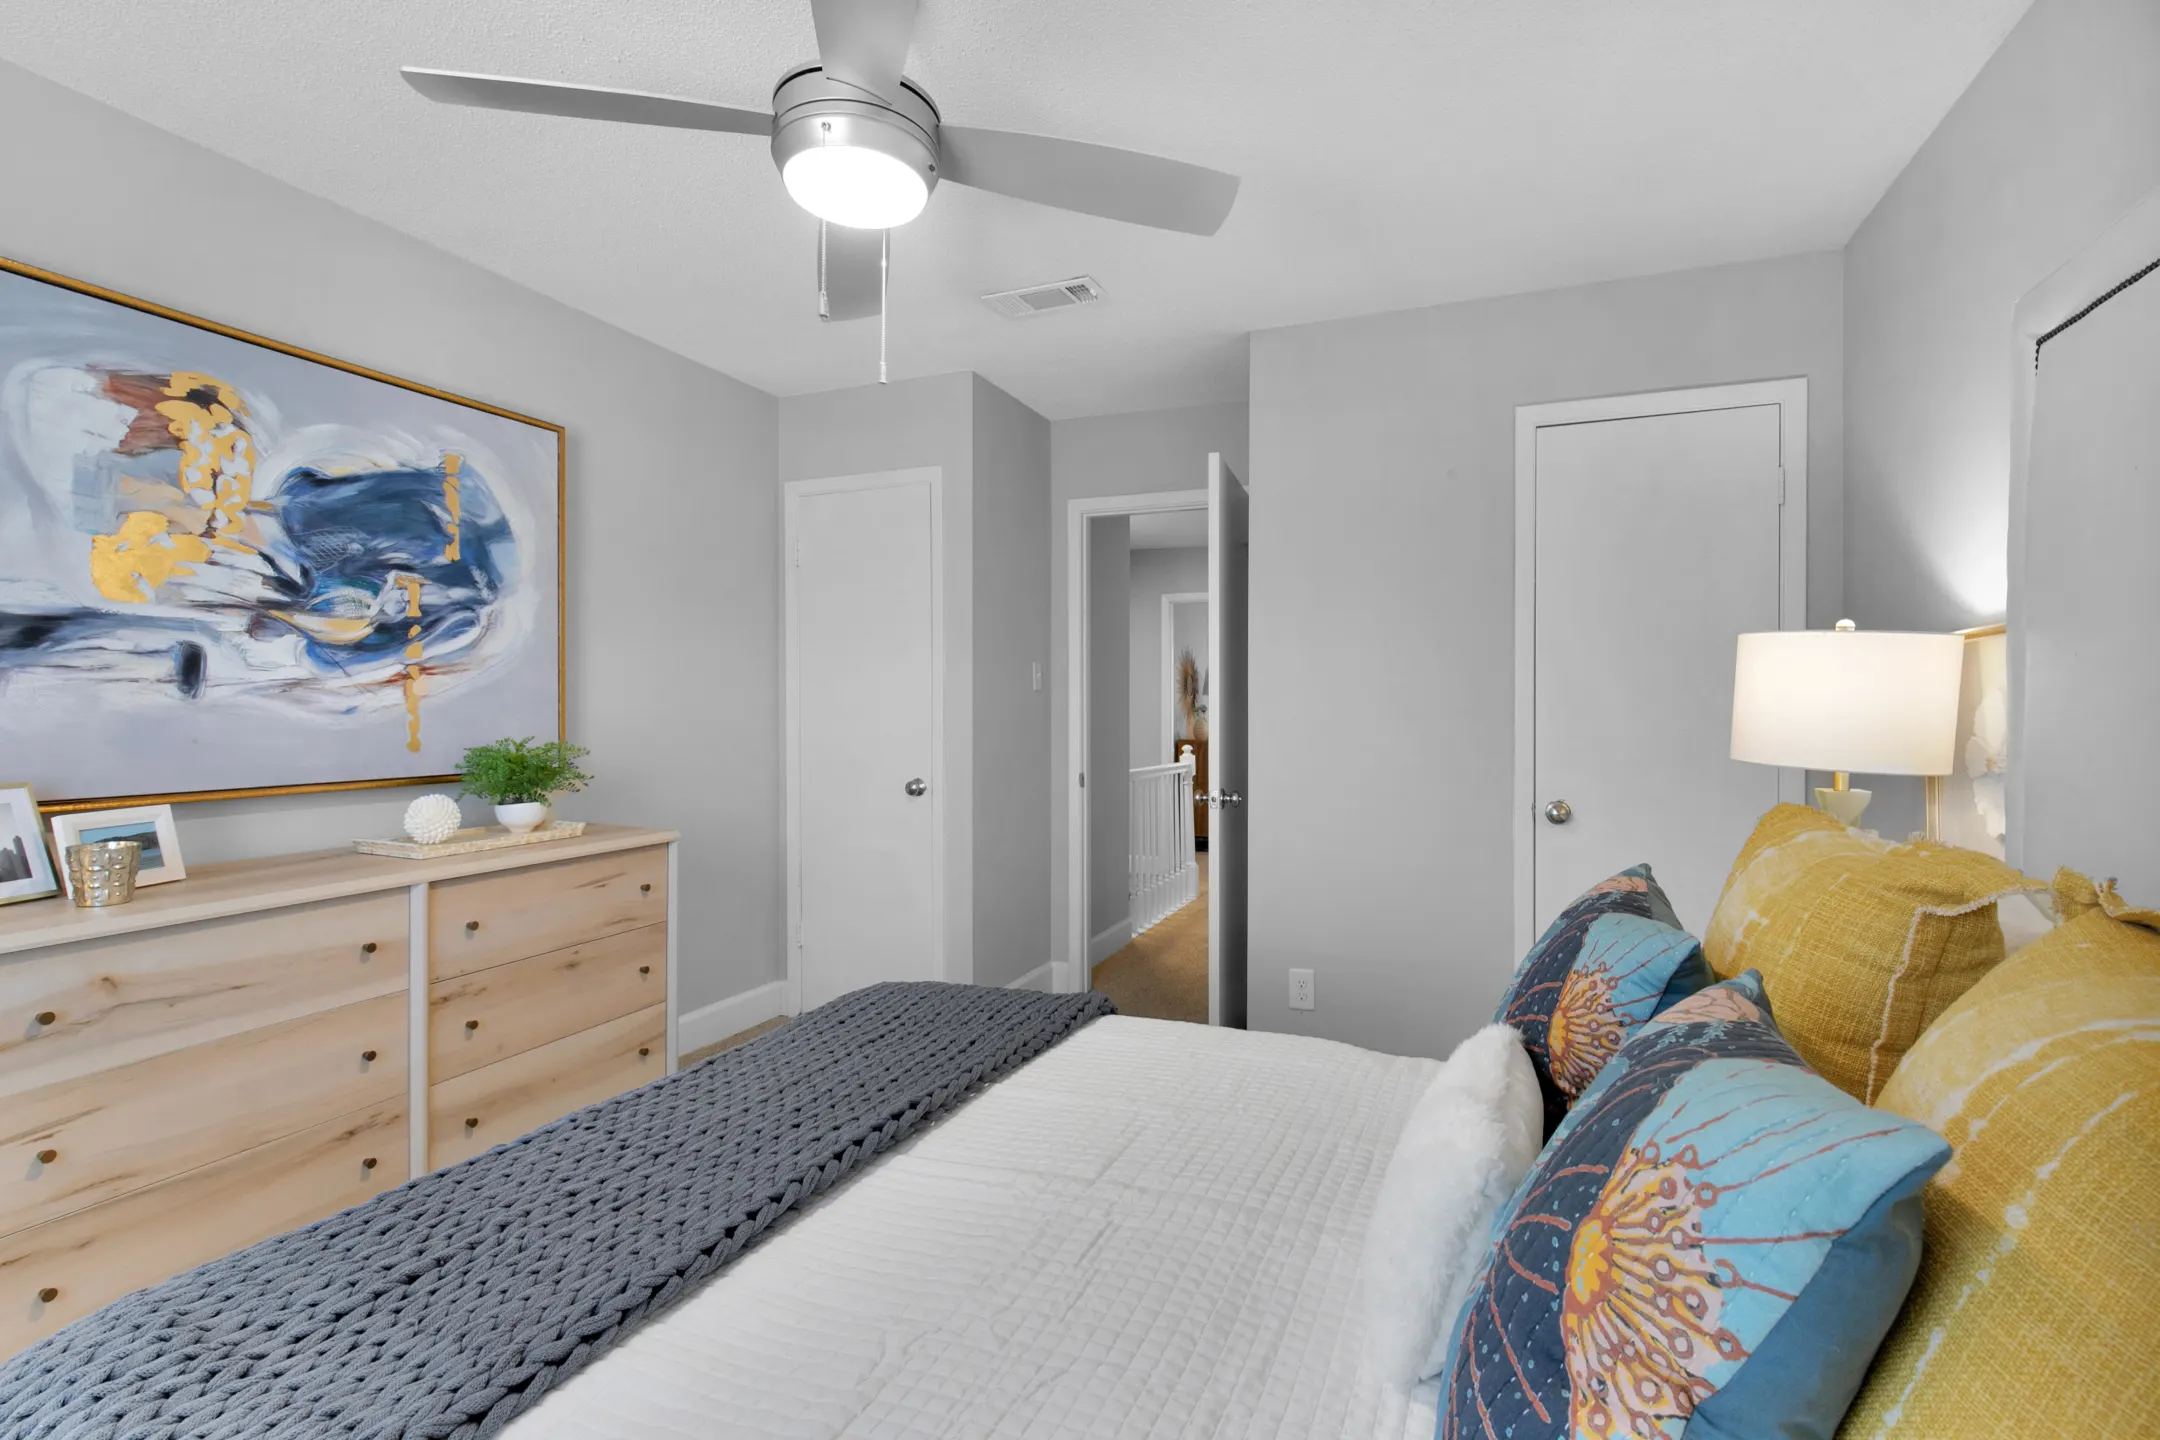 Bedroom - Carondolet Apartments - Mobile, AL